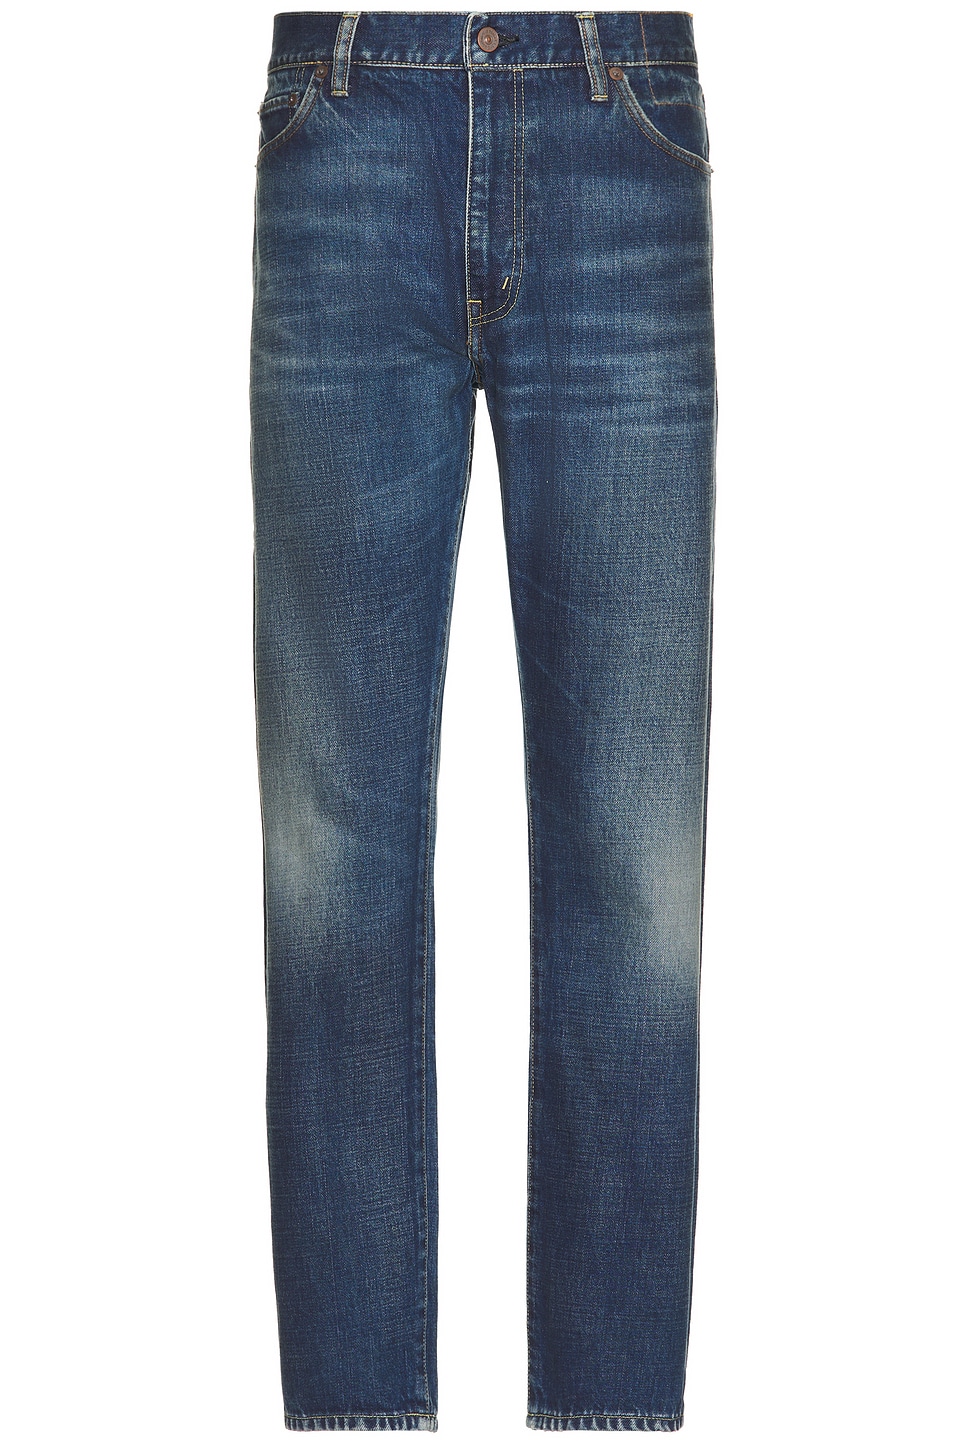 Image 1 of Visvim Social Sculpture Damaged Jeans in L30